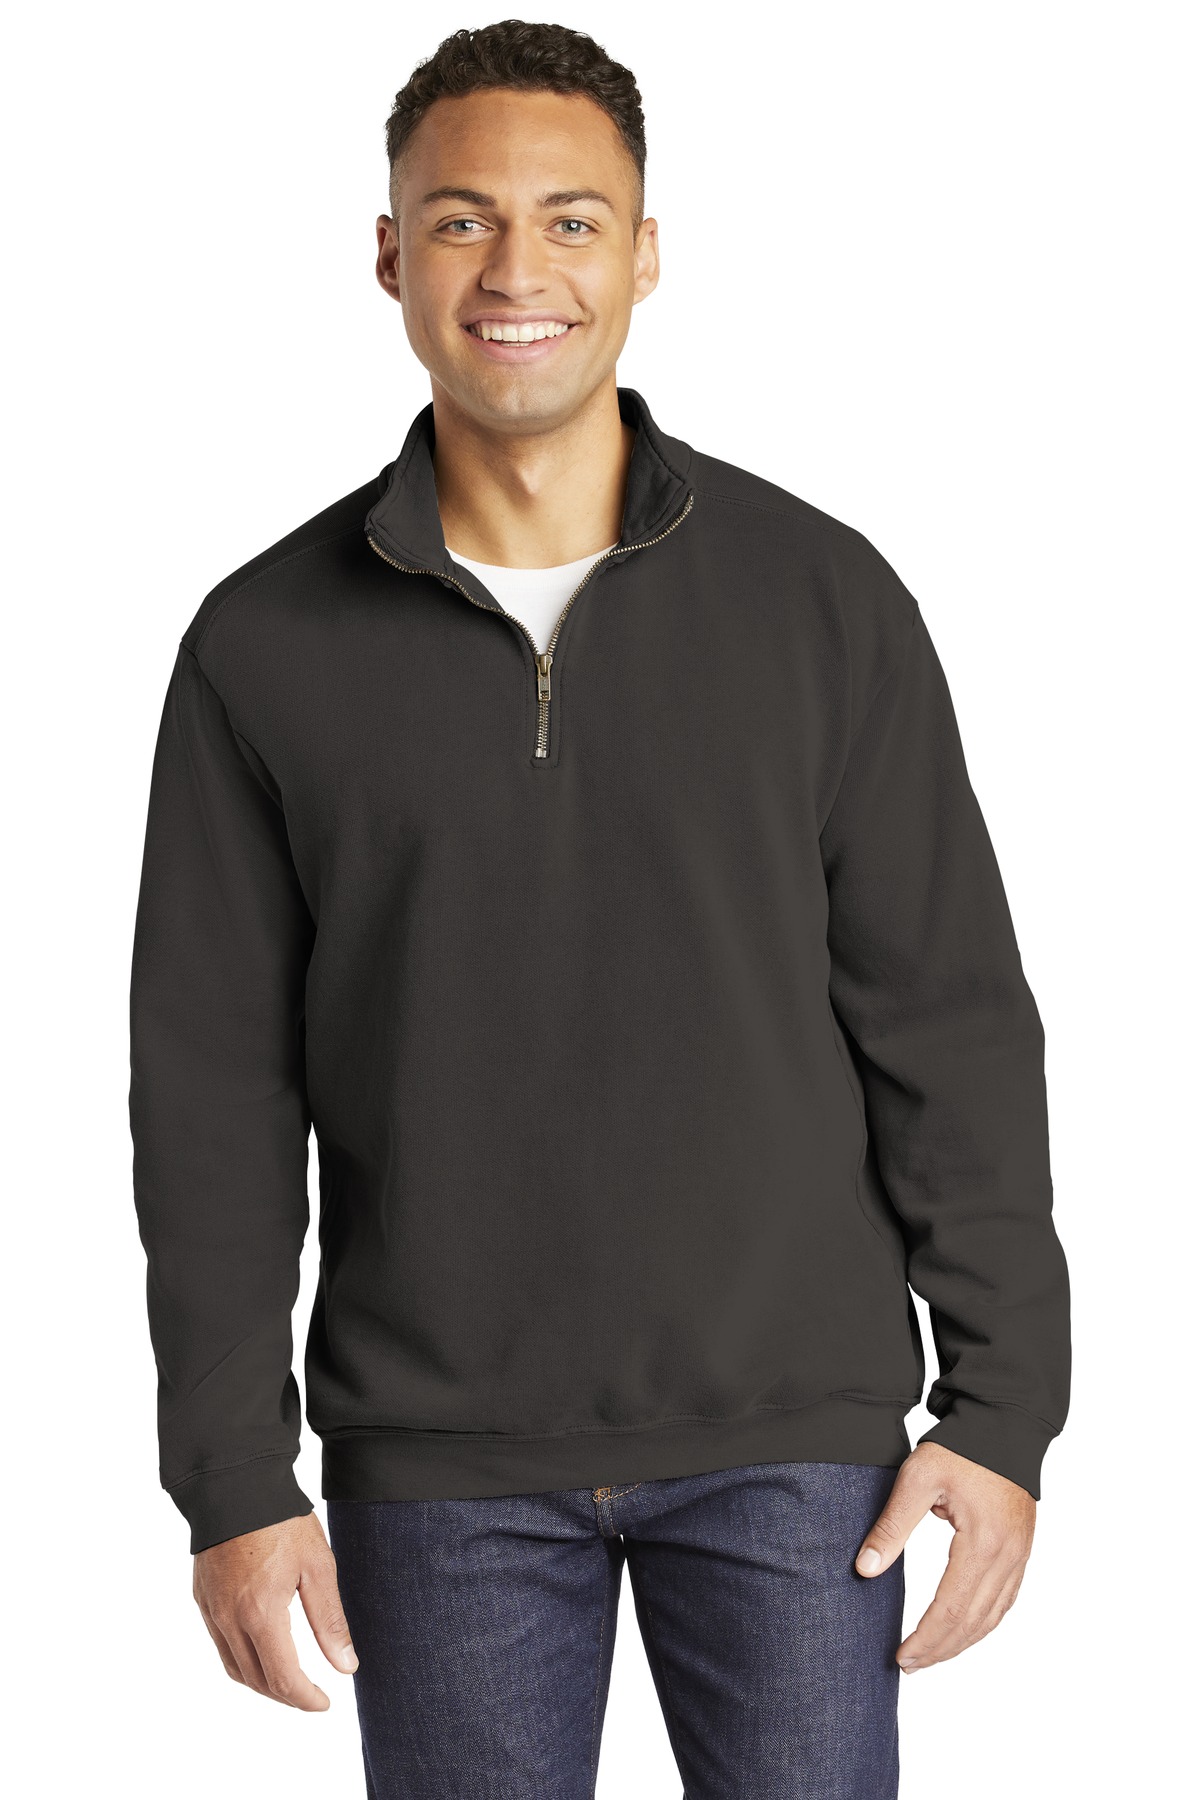 COMFORT COLORS Ring Spun 1/4-Zip Sweatshirt-Comfort Colors